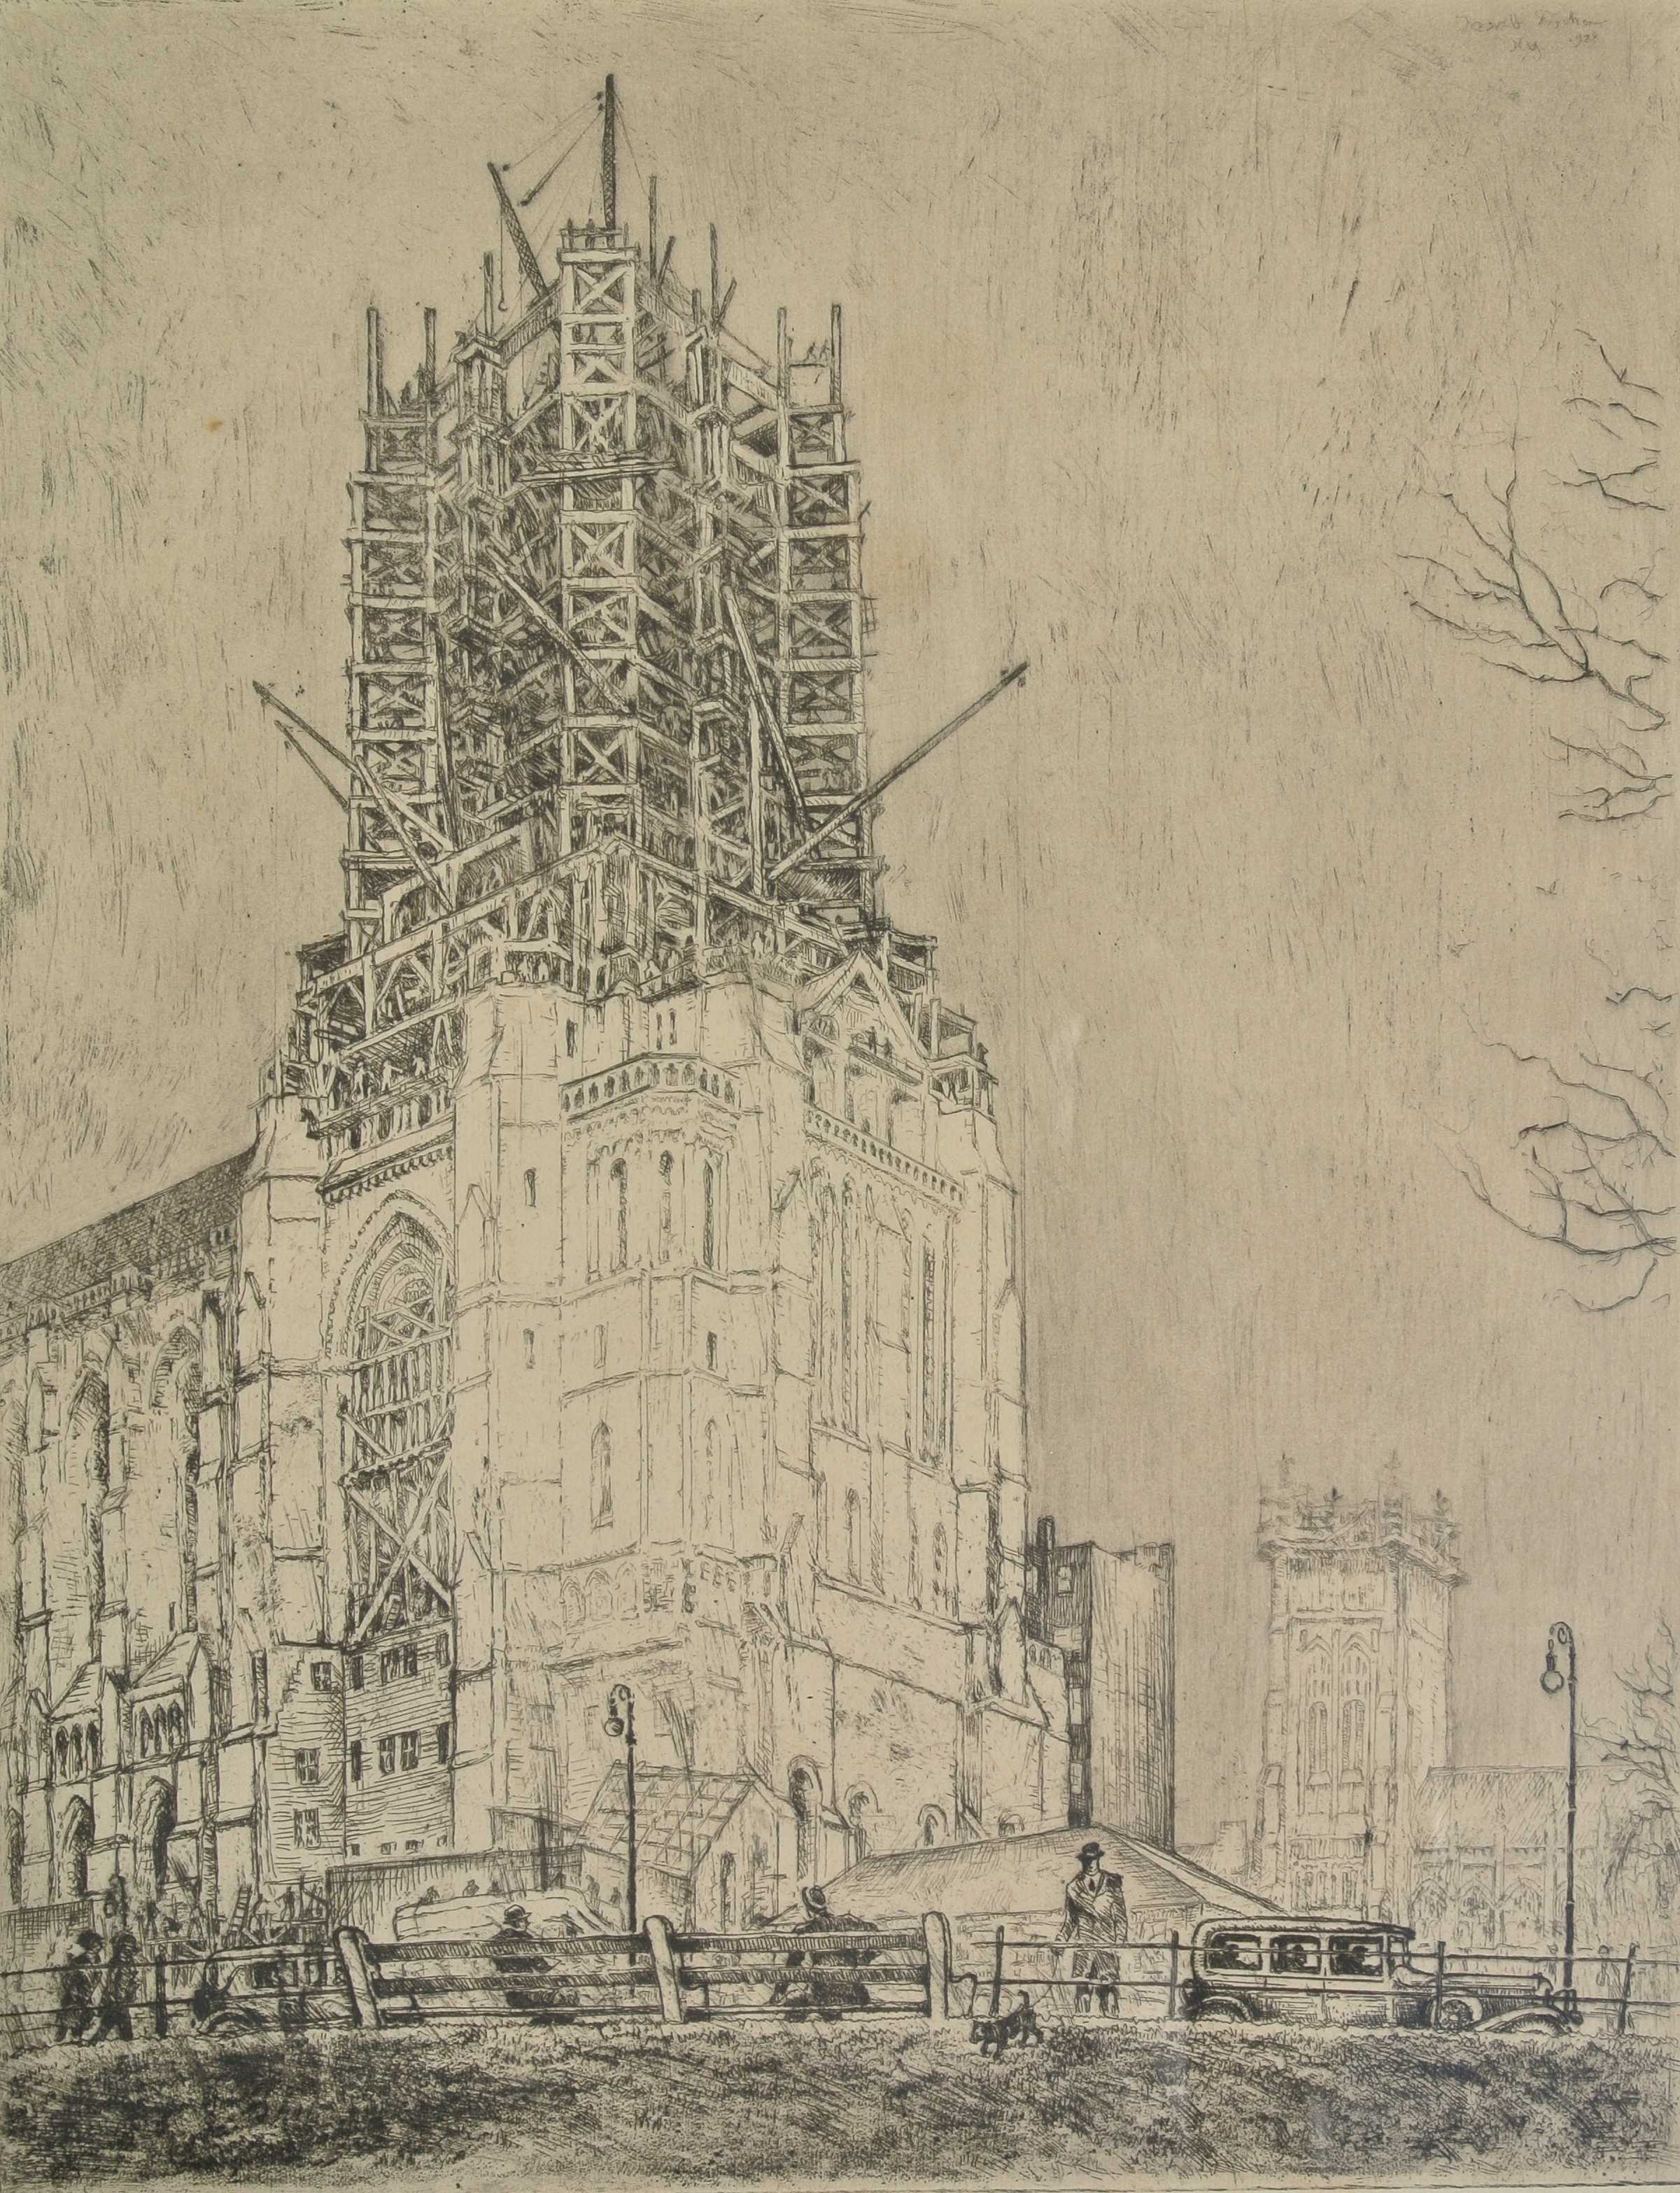 St. Patrick's Cathedral, New York, 1928, für vergrößerte Ansicht anklicken!